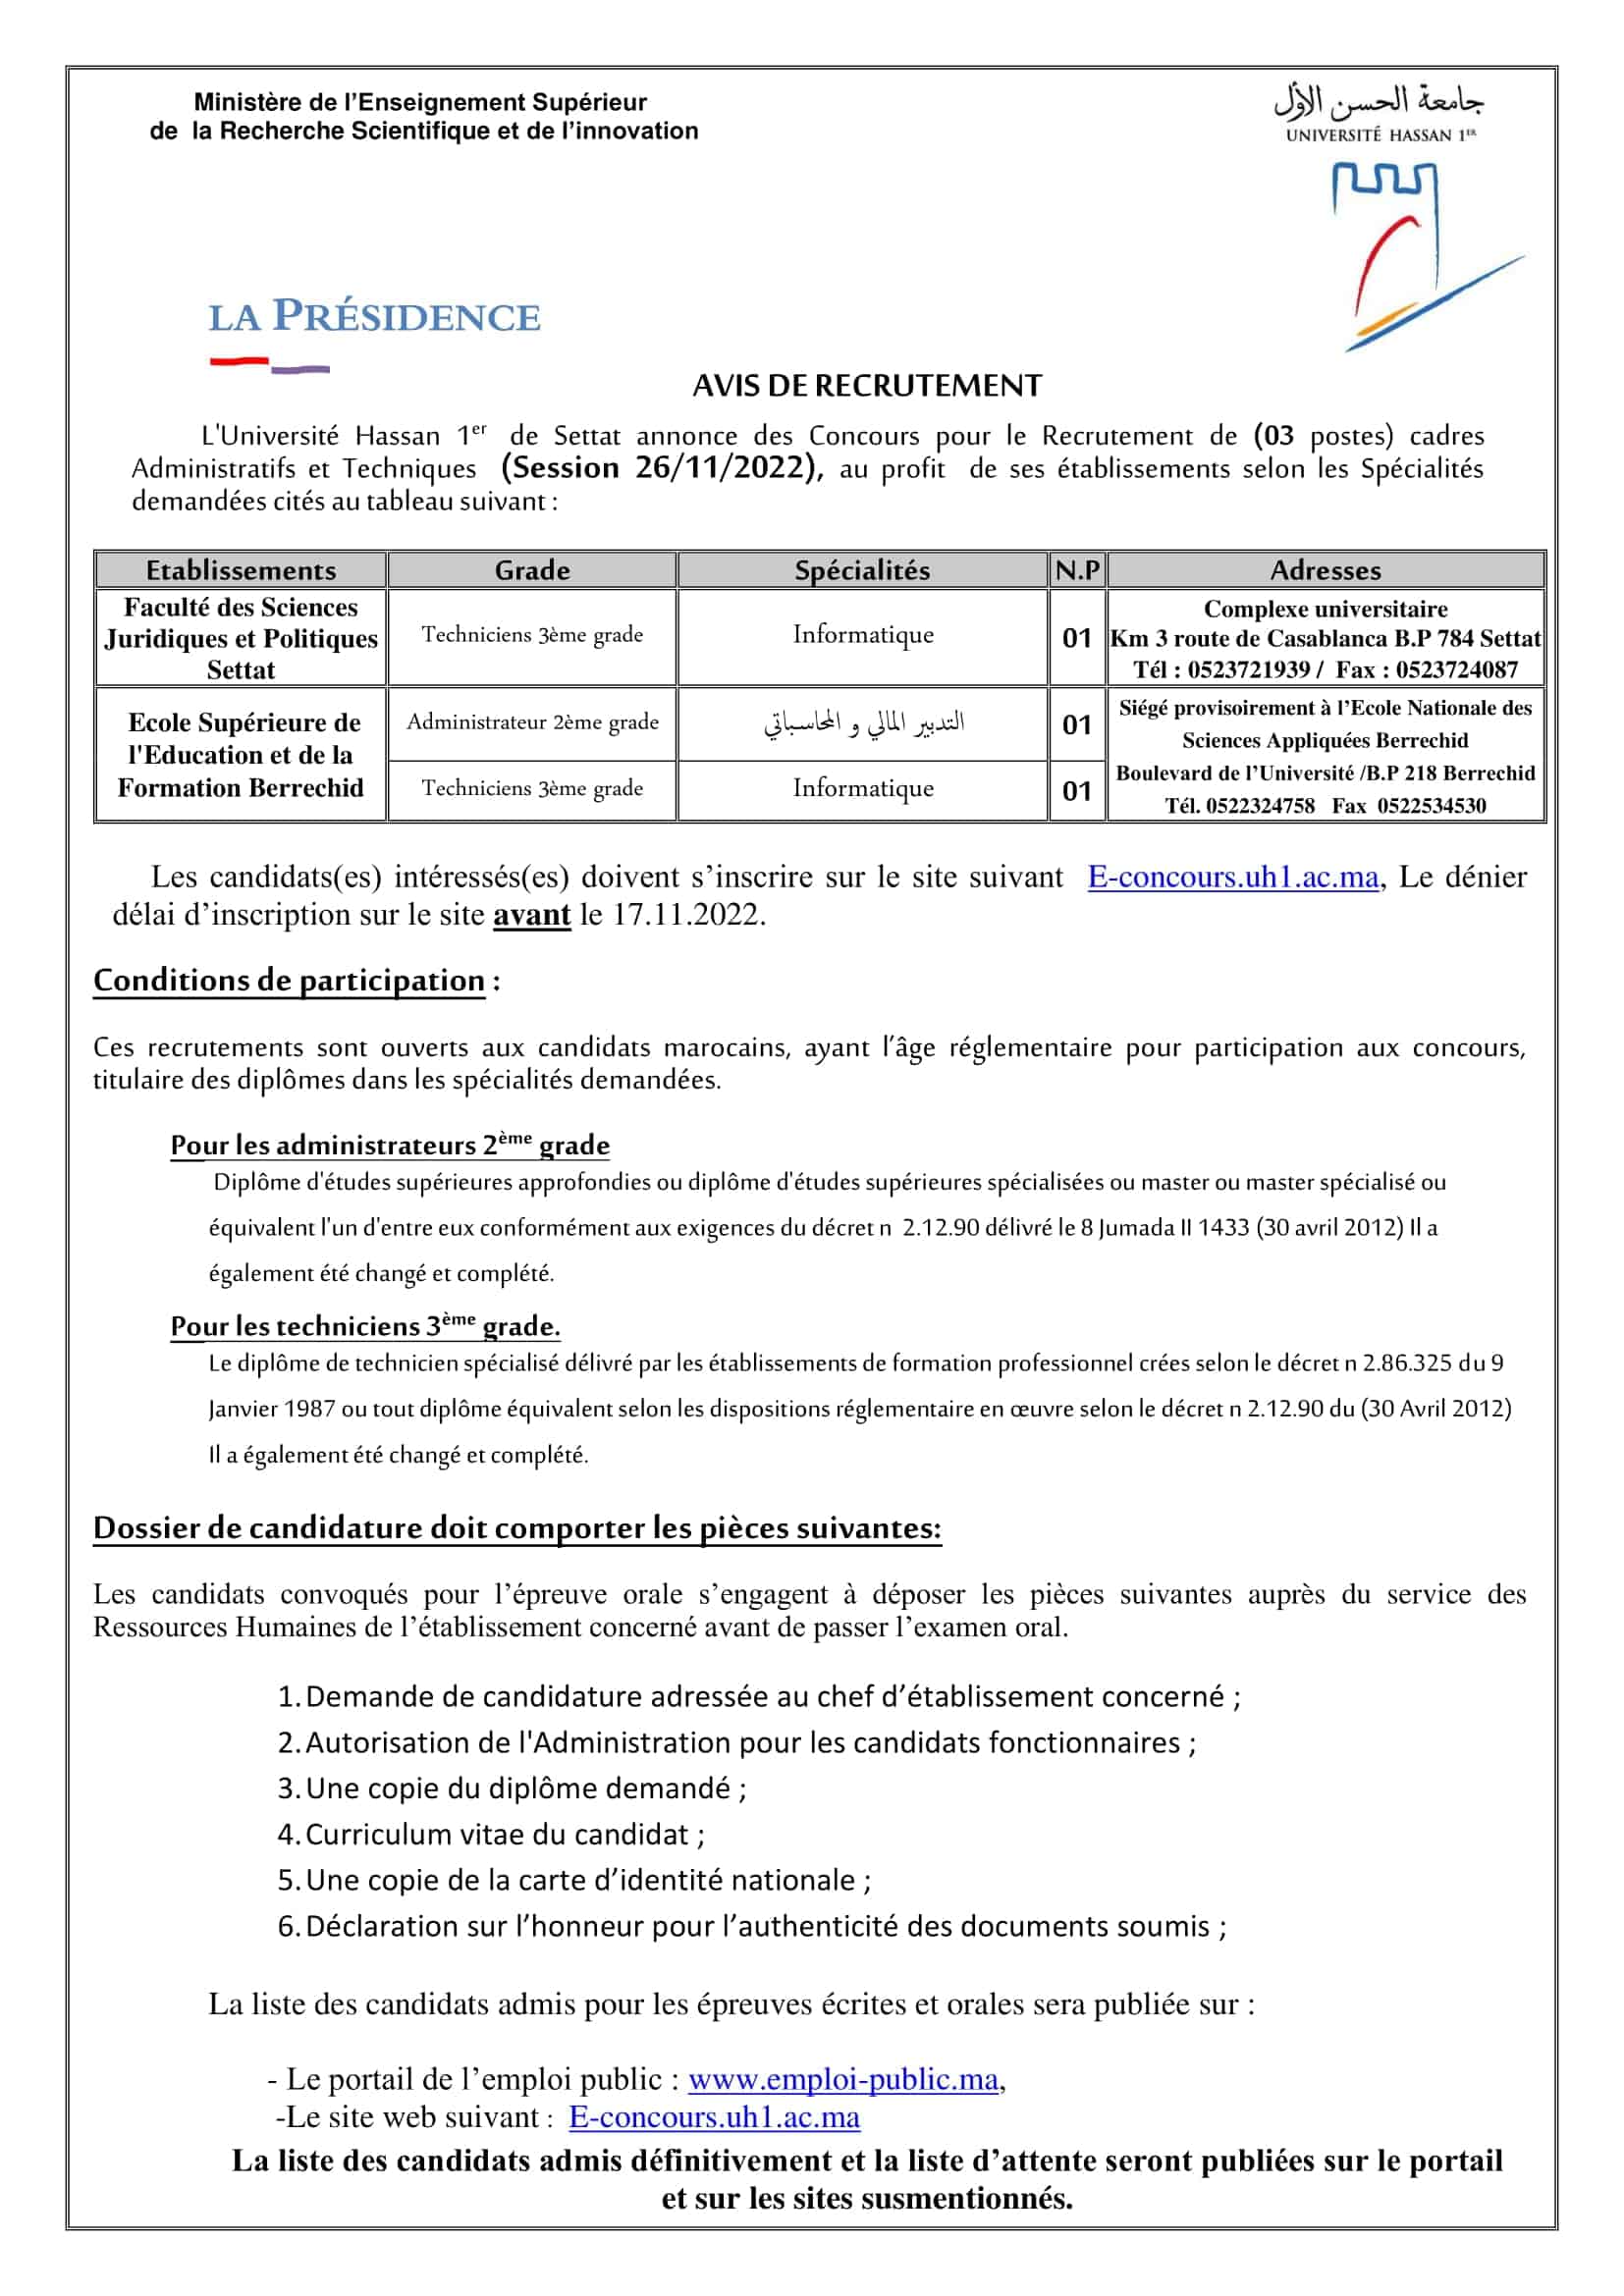 Concours Universite Hassan 1er 2022 4 Postes Concours Université Hassan 1er 2022 (4 Postes)